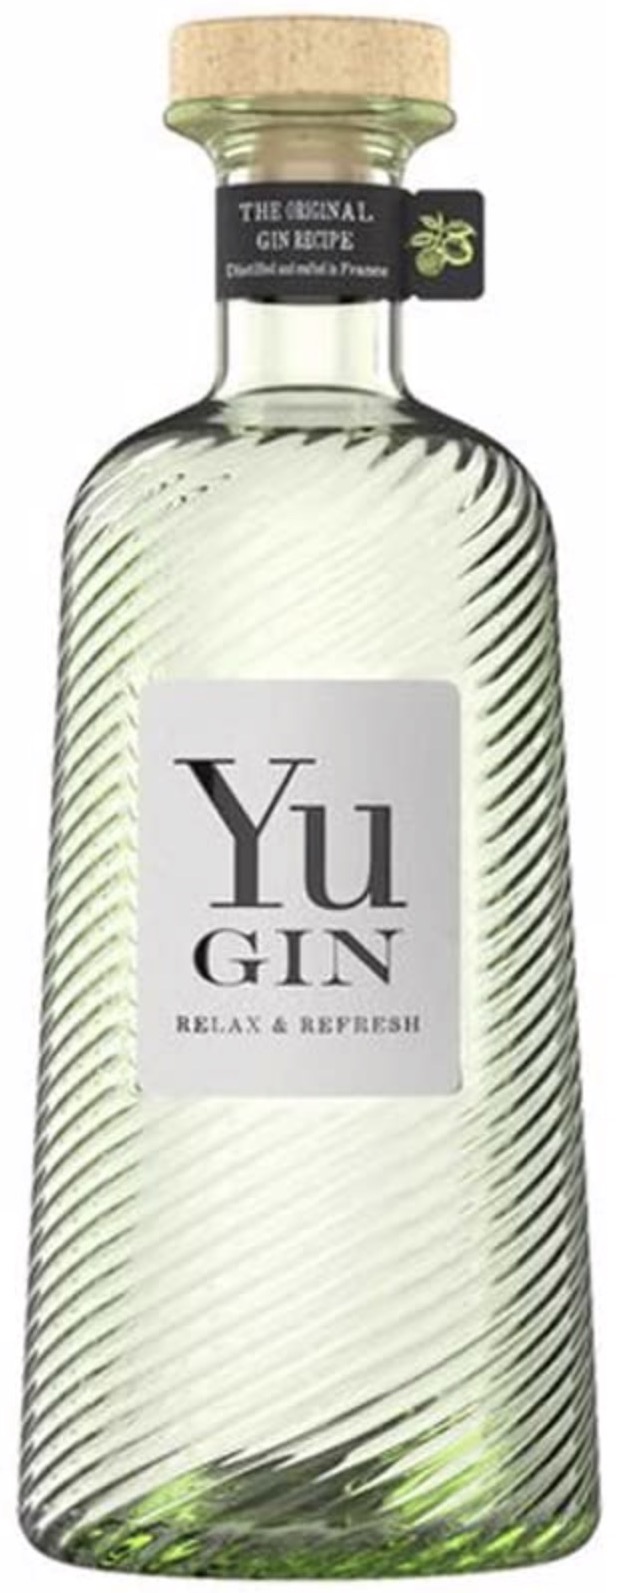 Yu Gin Frankreich 43% vol. 0,7L